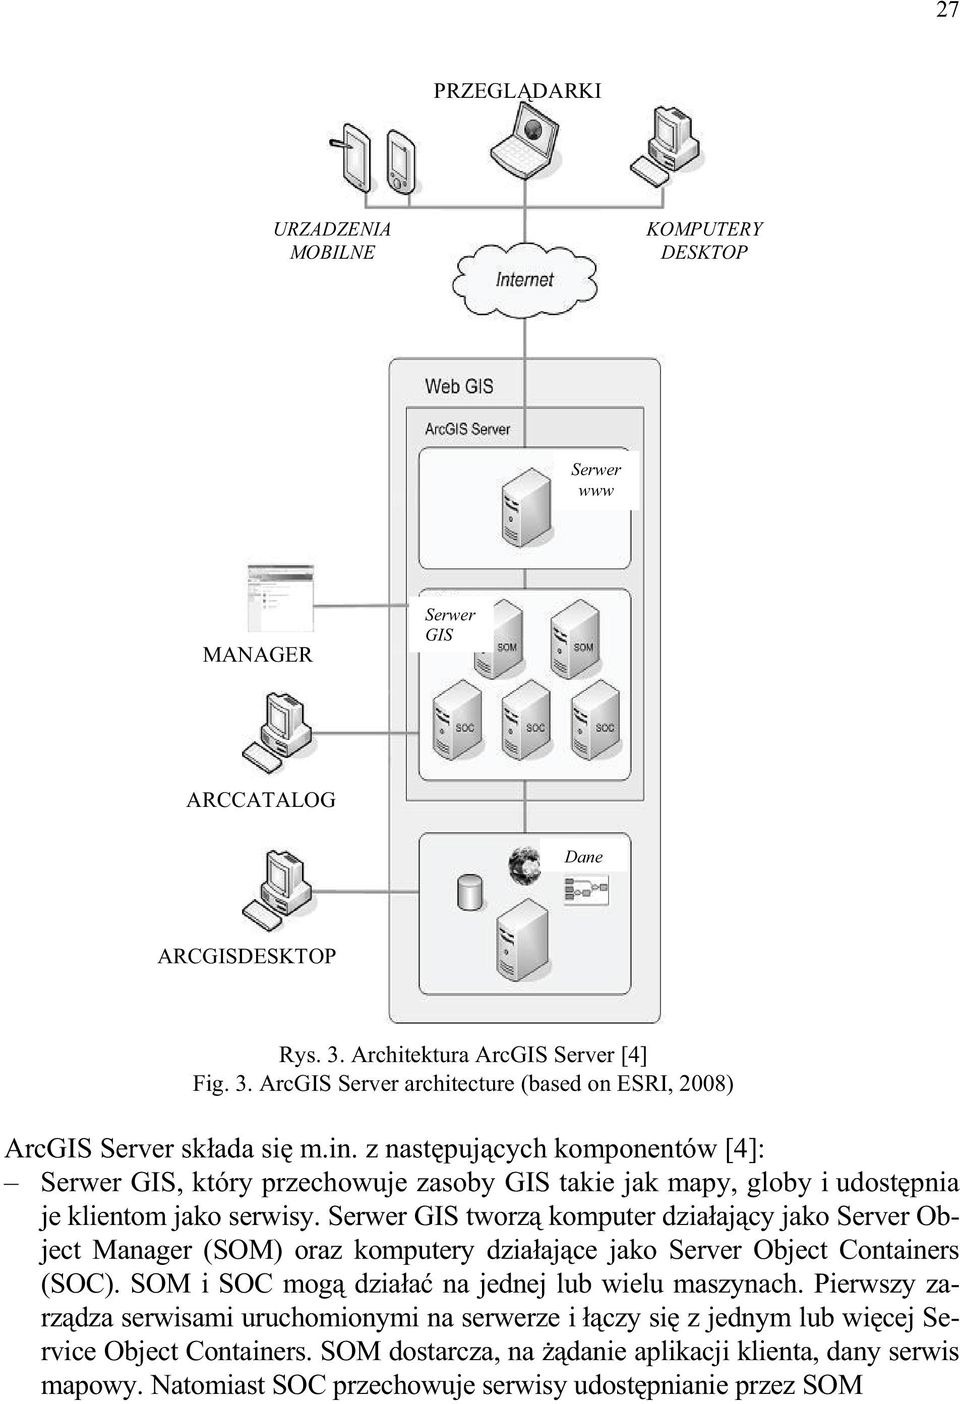 Serwer GIS tworz komputer dzia aj cy jako Server Object Manager (SOM) oraz komputery dzia aj ce jako Server Object Containers (SOC). SOM i SOC mog dzia a na jednej lub wielu maszynach.